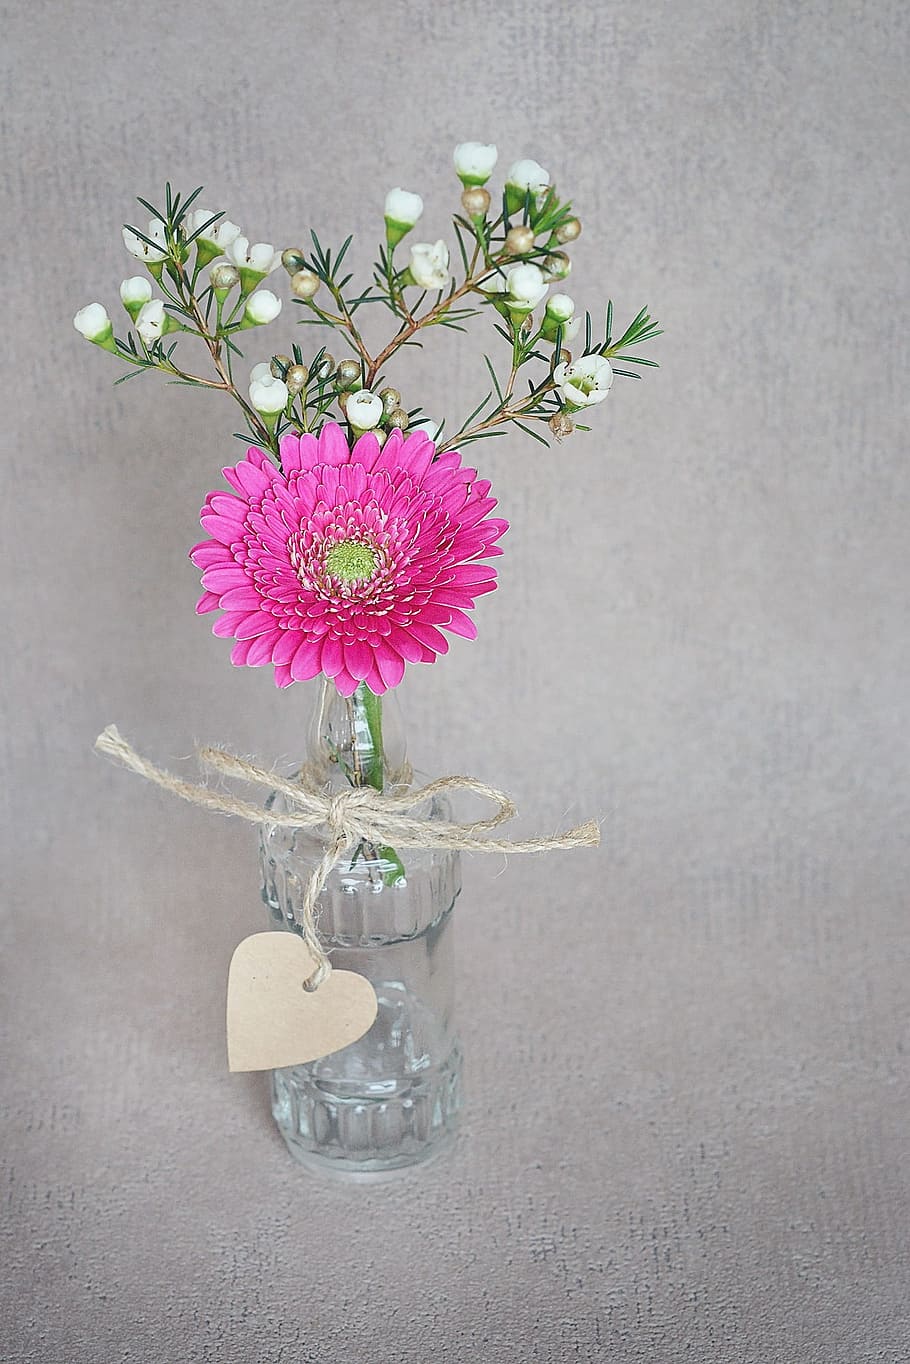 merah muda, bunga daisy gerbera, putih, bunga erica, jelas, pusat botol kaca, gerbera, kamboja, mekar, vas